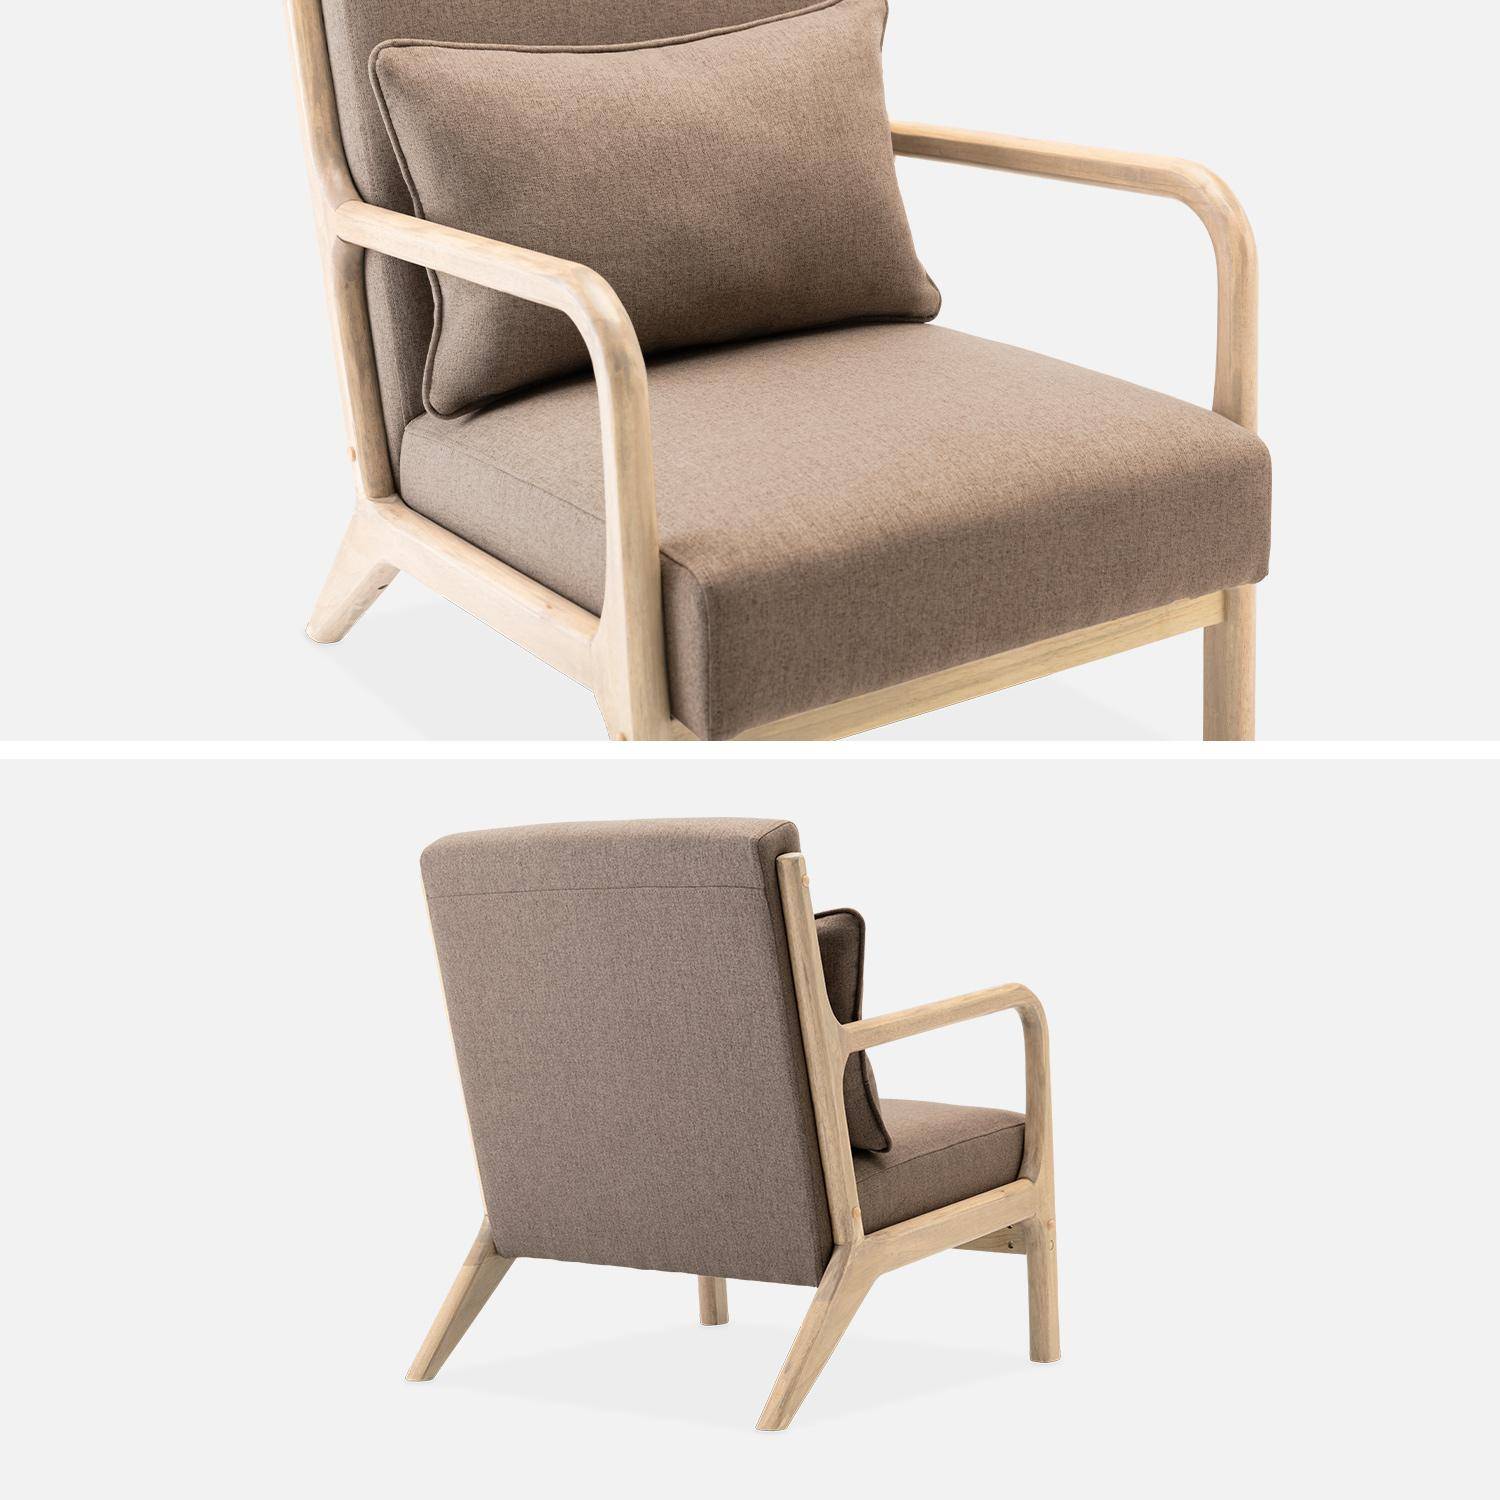 Fauteuil design marron en bois et tissu, 1 place droit fixe, pieds compas scandinave, structure en bois solide, assise confortable  Photo6